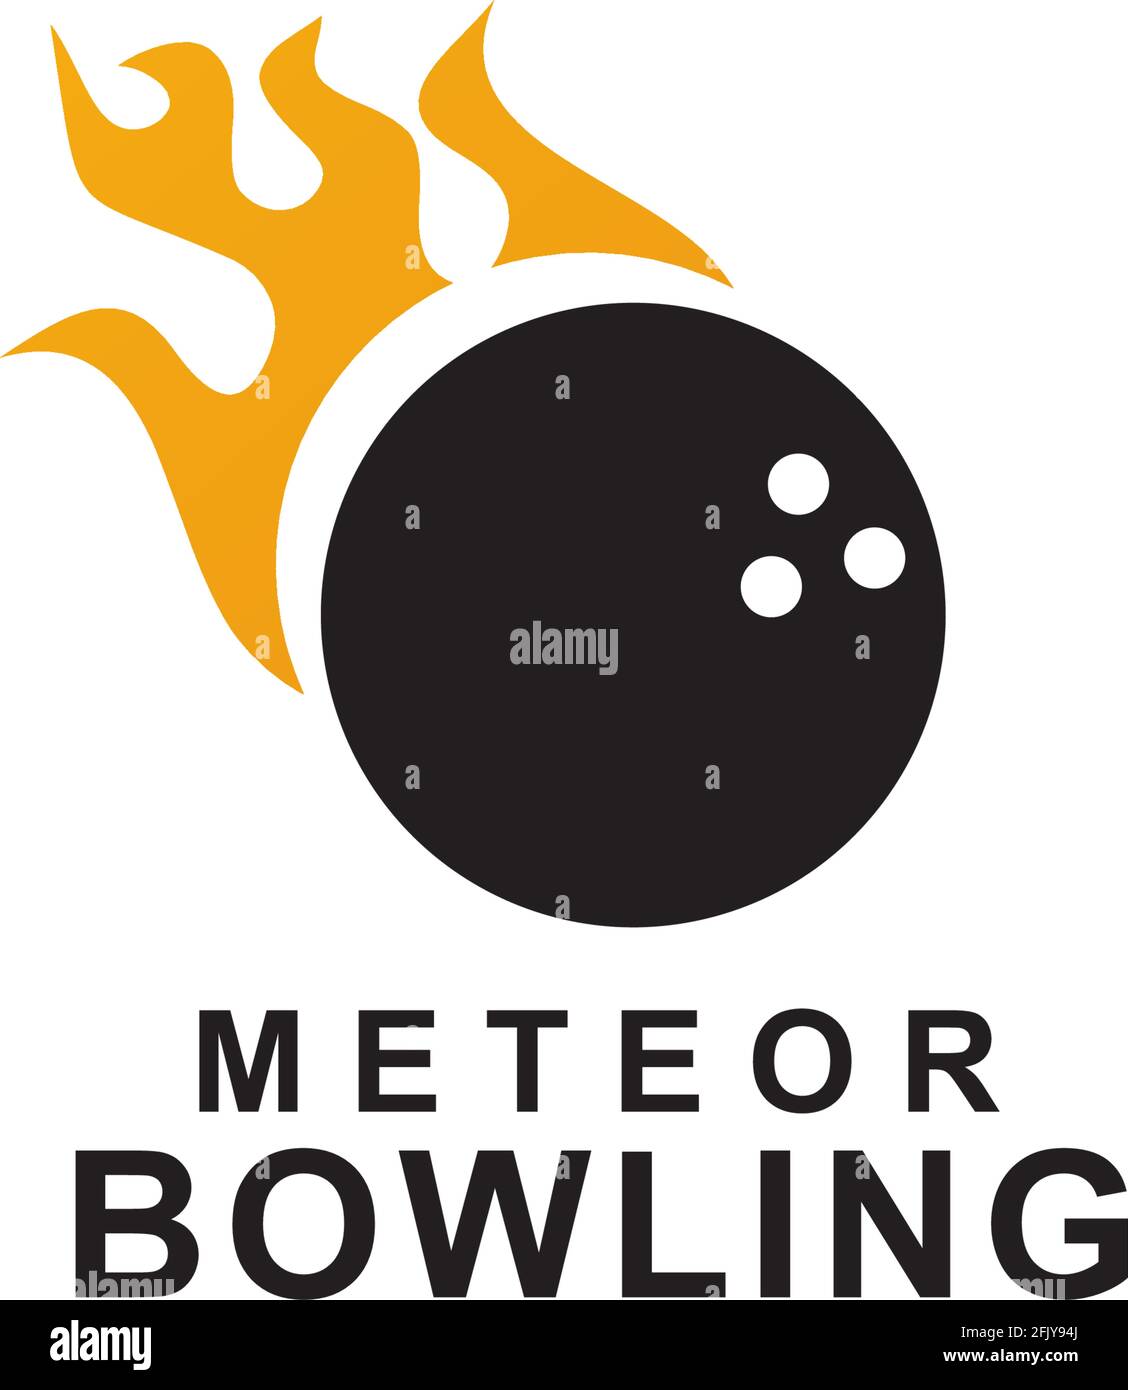 Meteor bowling logo design vector template Stock Vector